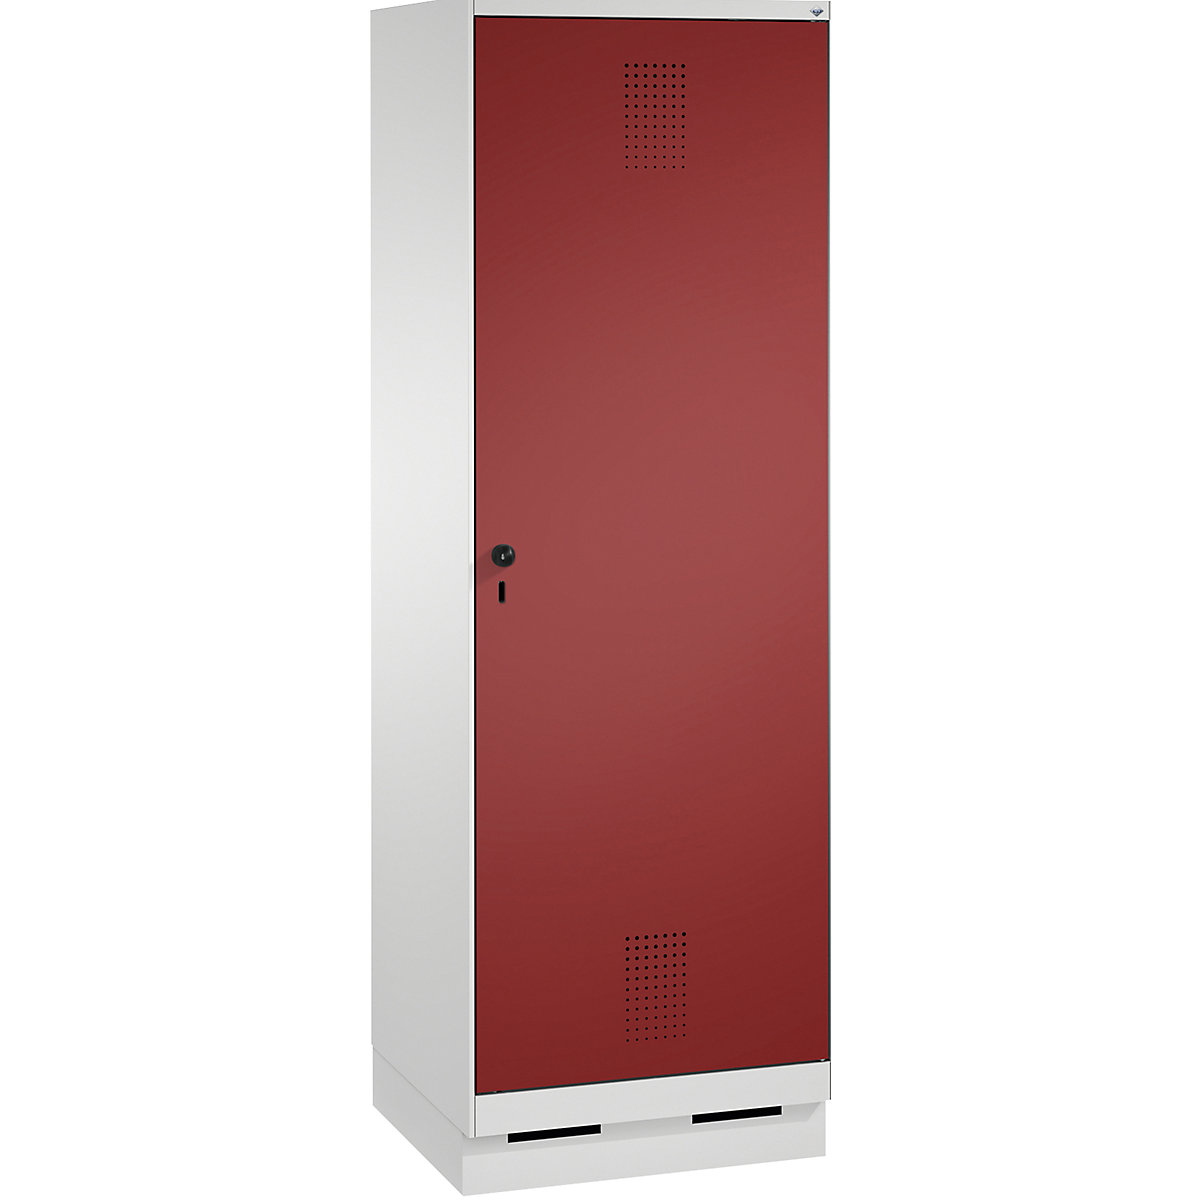 Garderobna omara EVOLO, vrata čez 2 predelka, s podnožjem – C+P, 2 razdelka, 1 vrata, širina razdelka 300 mm, svetlo siva / rubinasto rdeča-16